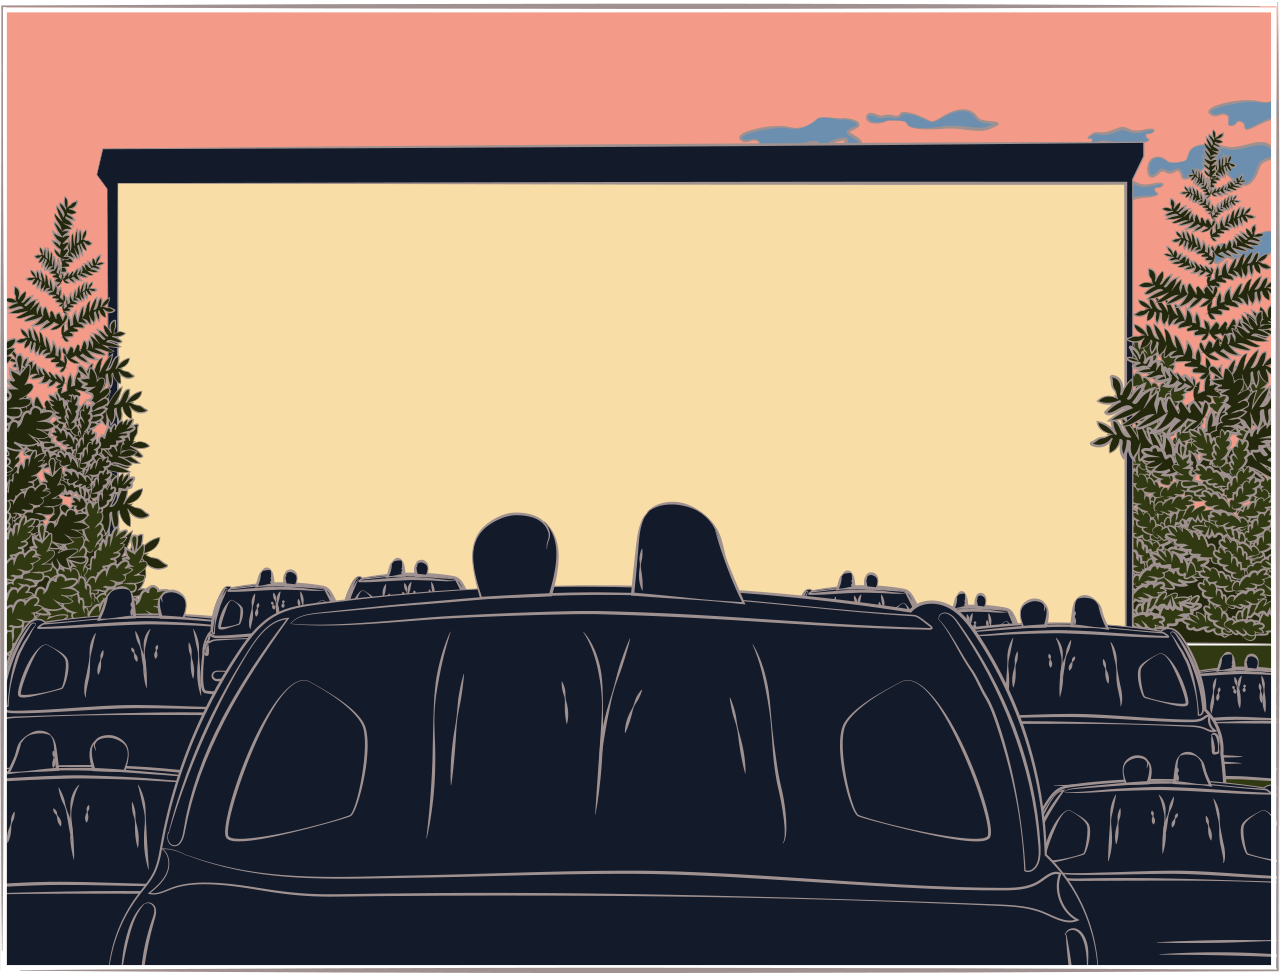 Иллюстрация автомобильного кинотеатра